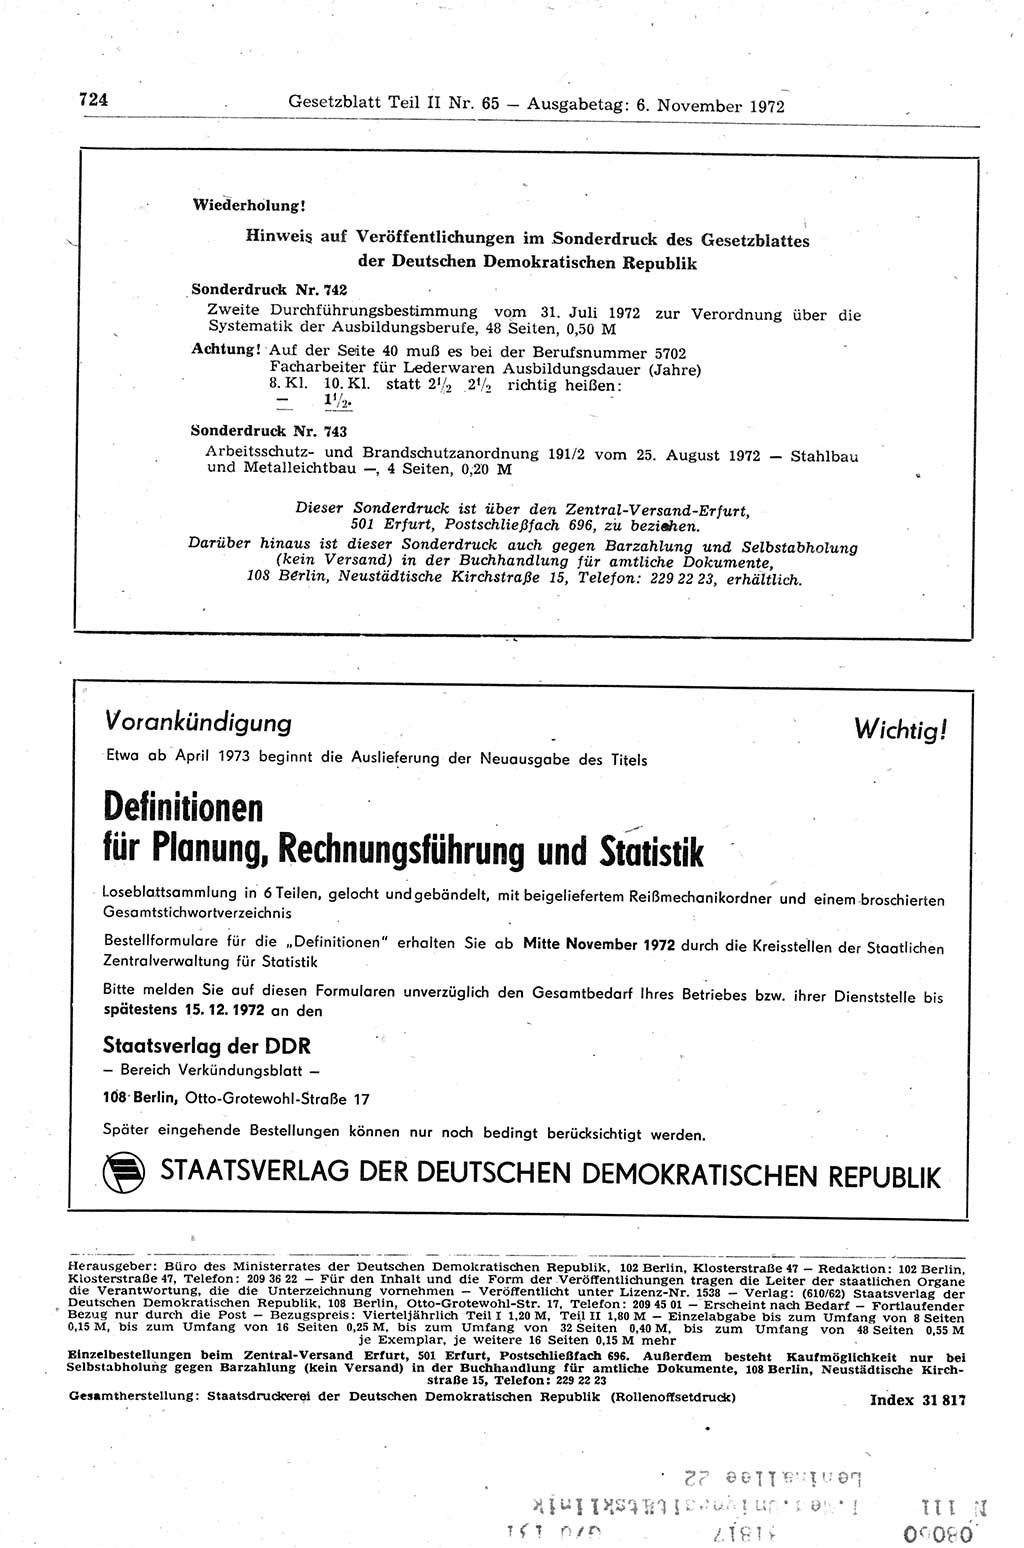 Gesetzblatt (GBl.) der Deutschen Demokratischen Republik (DDR) Teil ⅠⅠ 1972, Seite 724 (GBl. DDR ⅠⅠ 1972, S. 724)